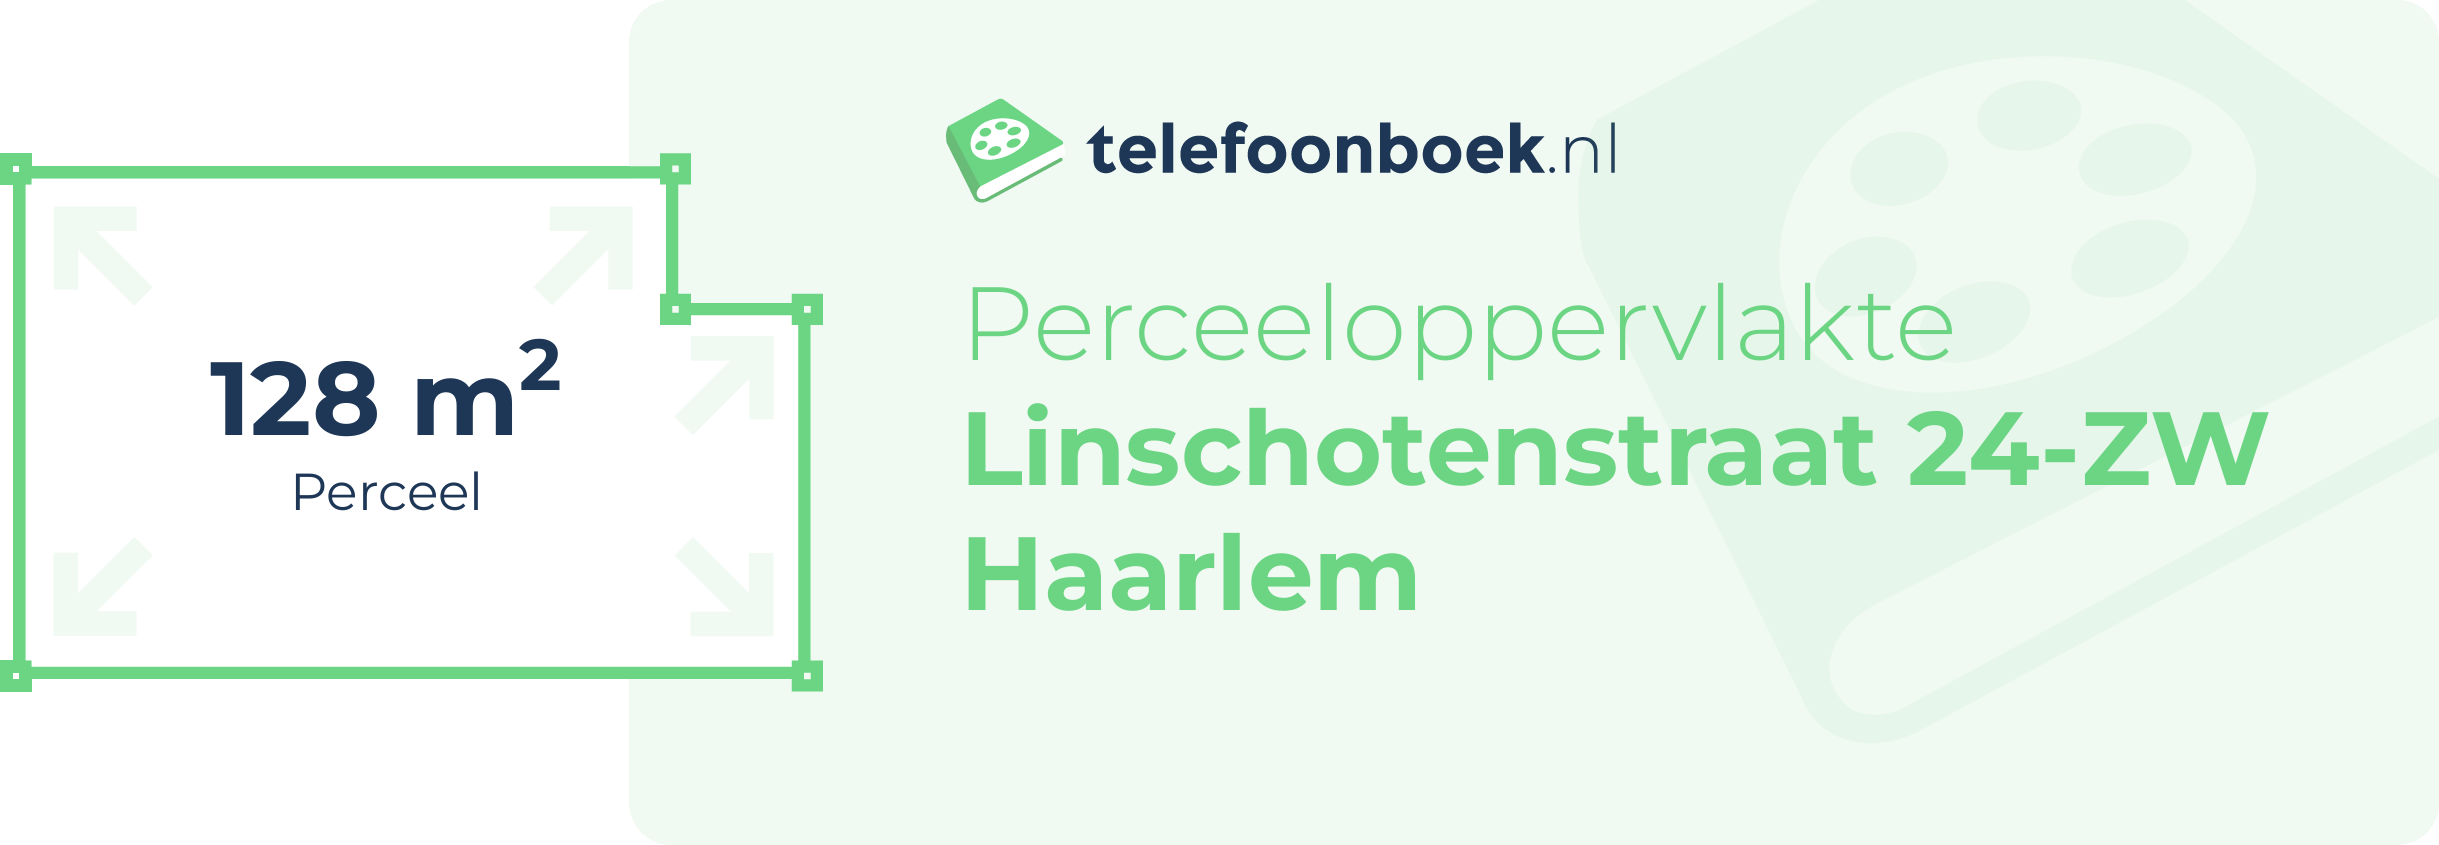 Perceeloppervlakte Linschotenstraat 24-ZW Haarlem